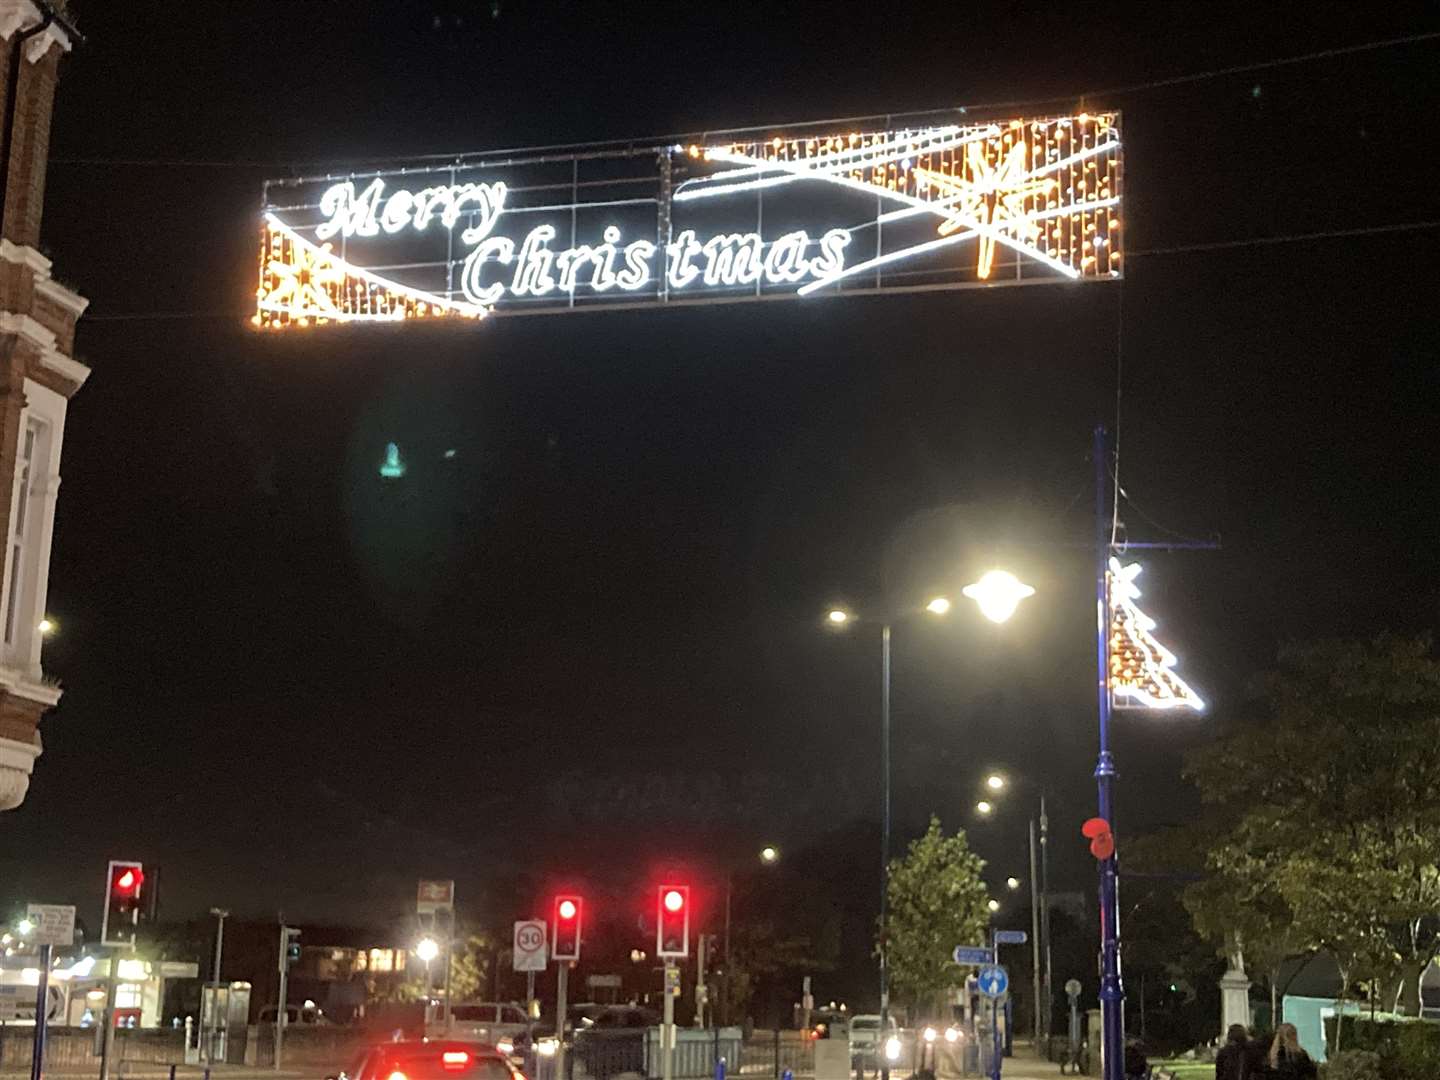 Sheerness Christmas lights 2021